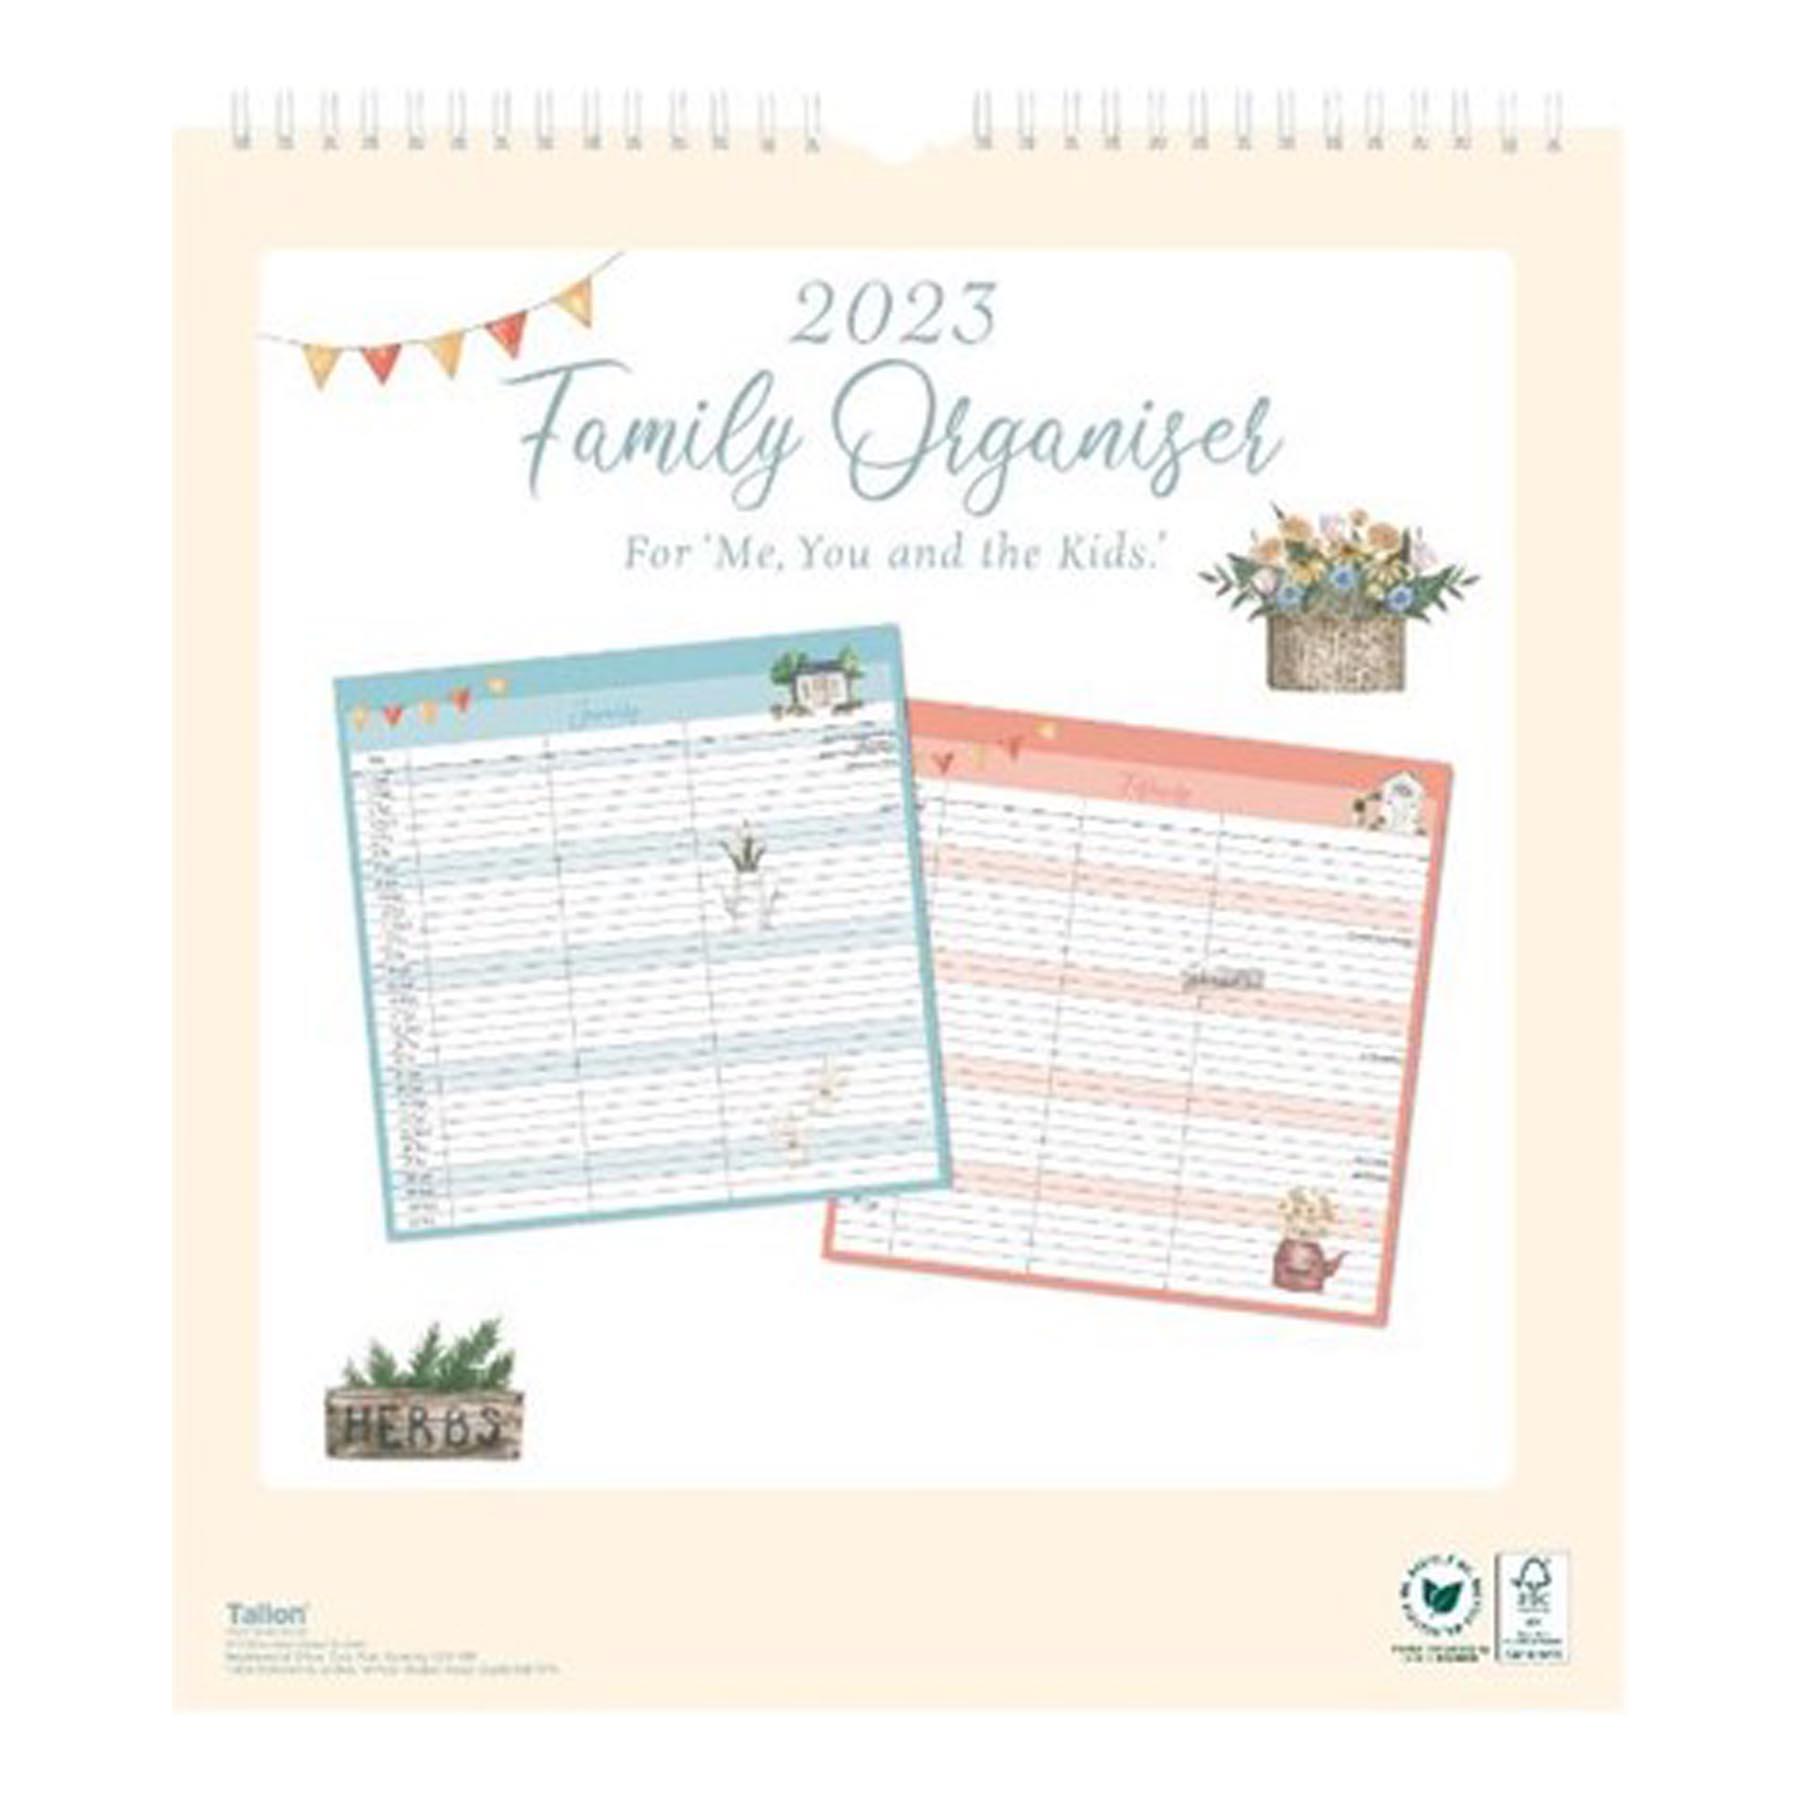 2023 Family Organiser Calendar with Note Board and Pen - Garden